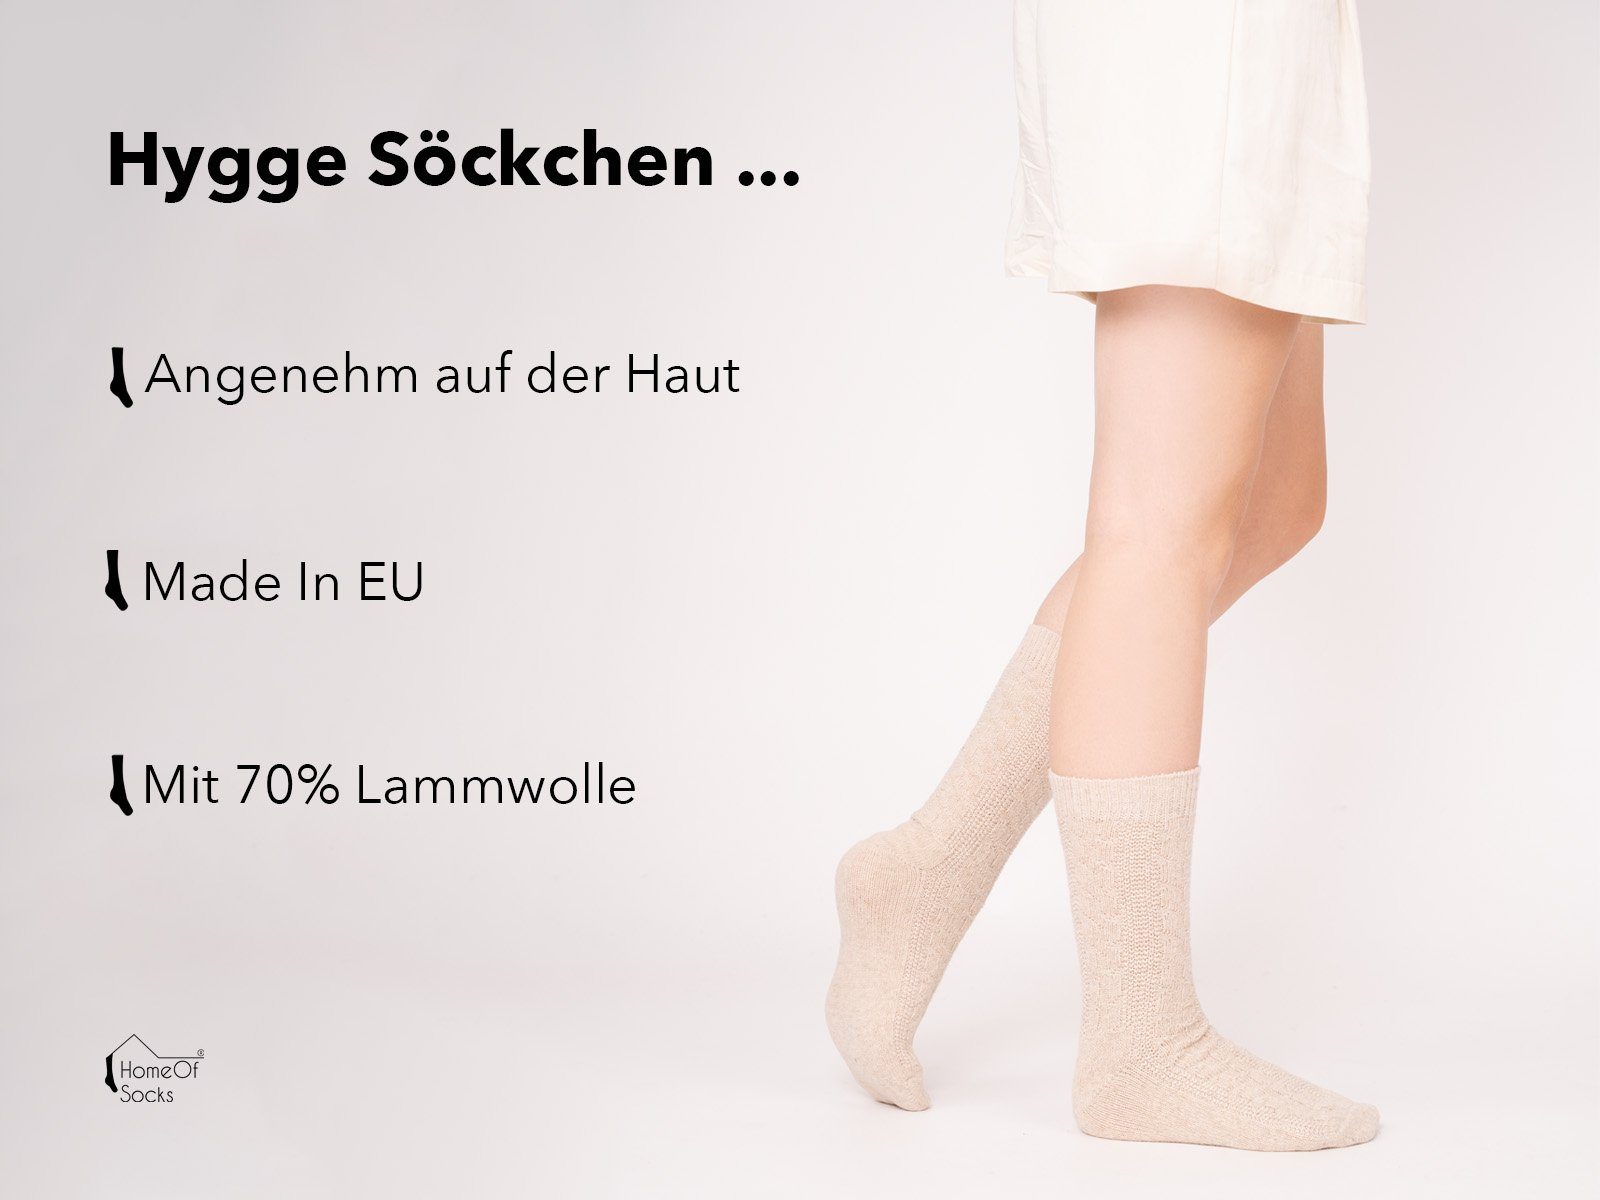 und Paar) Extra Lammwolle Wollsocken 70% (Paar, Warm Lambswool Socken 1 Zopfmuster Schwarz Wollsocken HomeOfSocks Socks Feine strapazierfähige